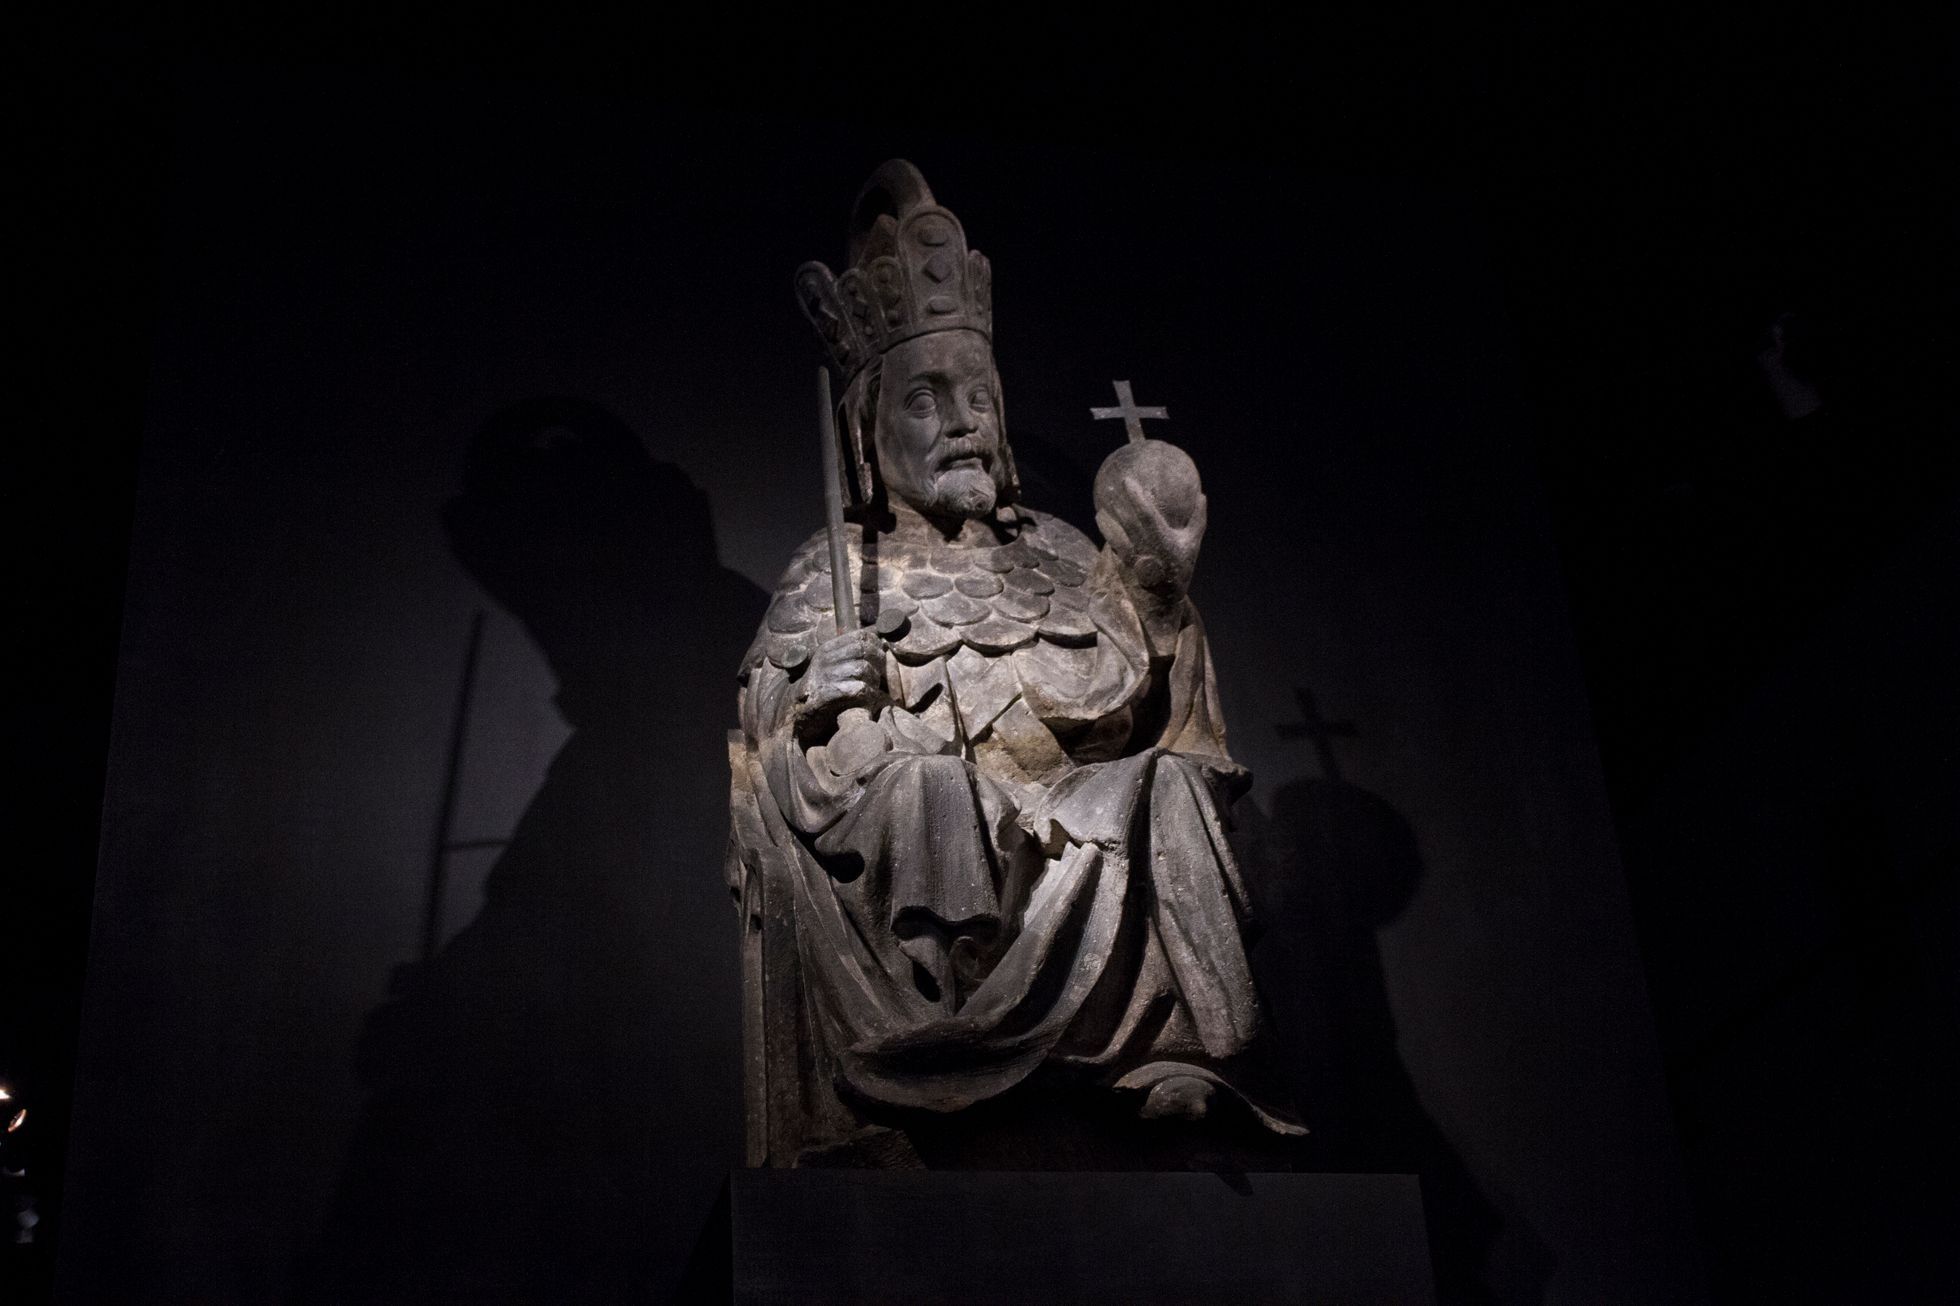 Výstava Císař Karel IV. 1316 - 2016